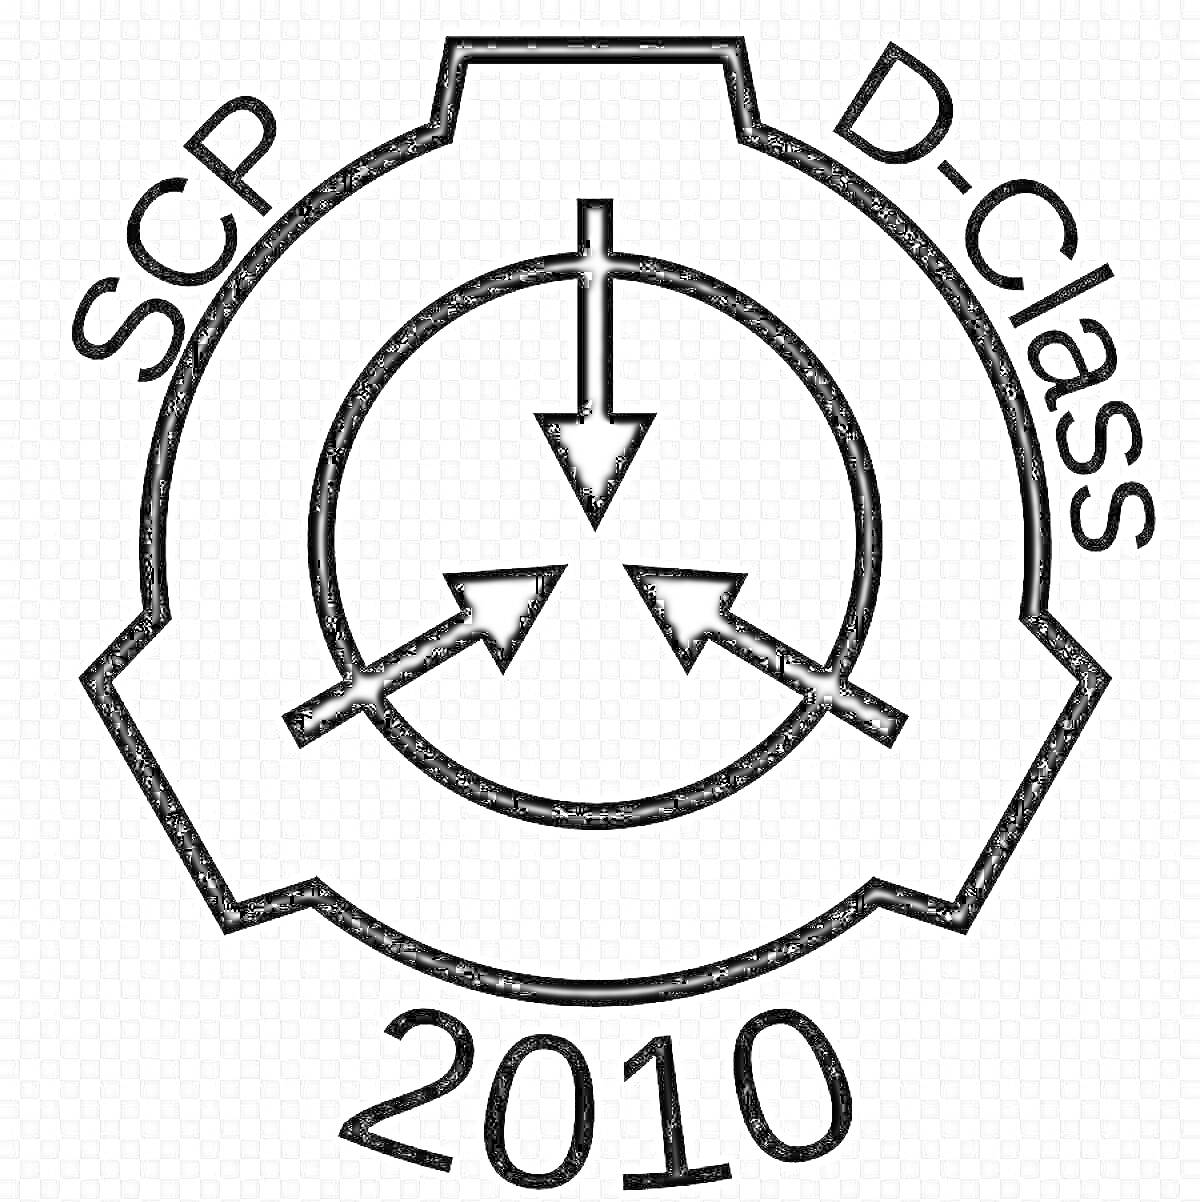 Раскраска Логотип SCP Фонда: D-Class 2010. Логотип включает символ SCP Фонда с тремя стрелками и надписями 